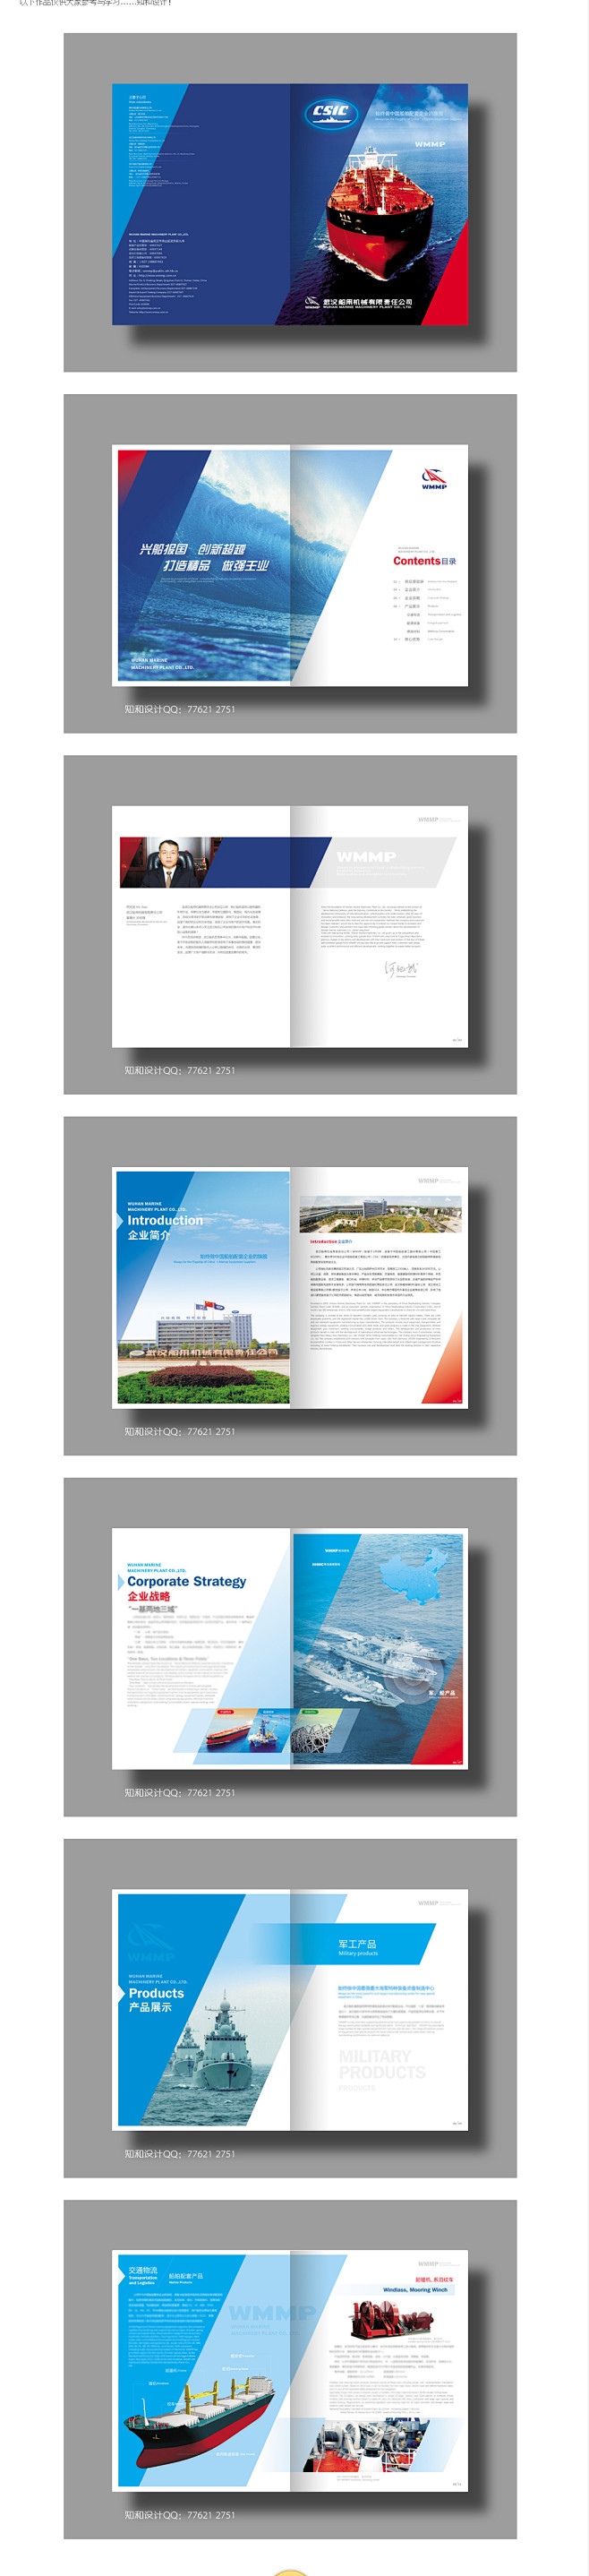 画册设计 企业画册设计 商业画册设计 平...